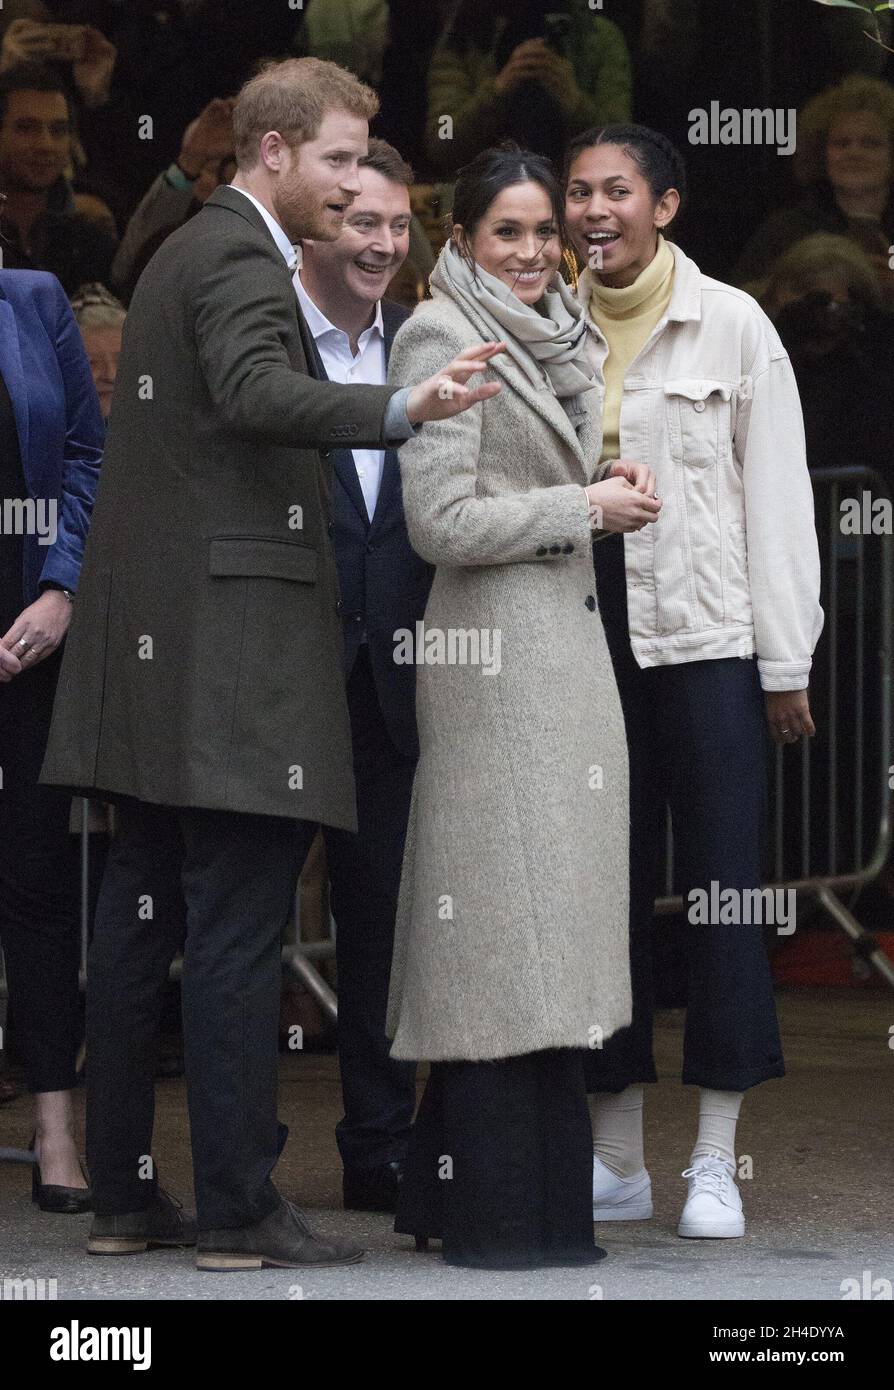 Il principe Harry e il suo fidanzato Meghan Markle arrivano a Pop Brixton per visitare la stazione radio Reprezent 107.3FM a Brixton, Londra. Foto datata: Martedì 9 gennaio 2018. Il credito fotografico deve essere: Isabel Infantes / EMPICS Entertainment. Foto Stock